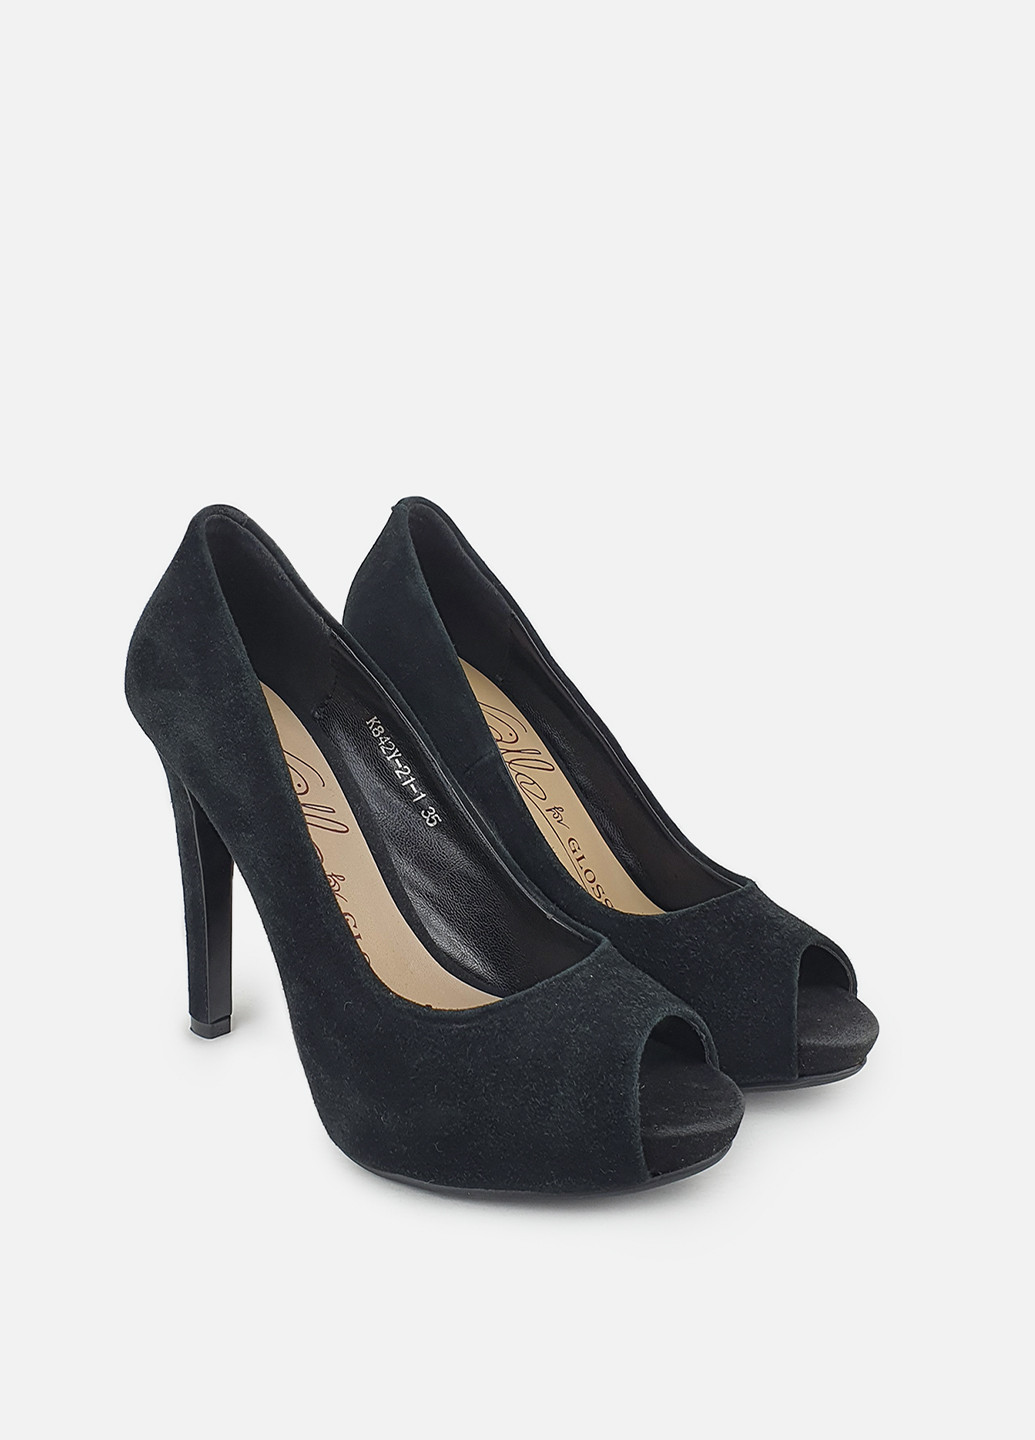 Туфли женские с шипами на высоком каблуке черные Glossi